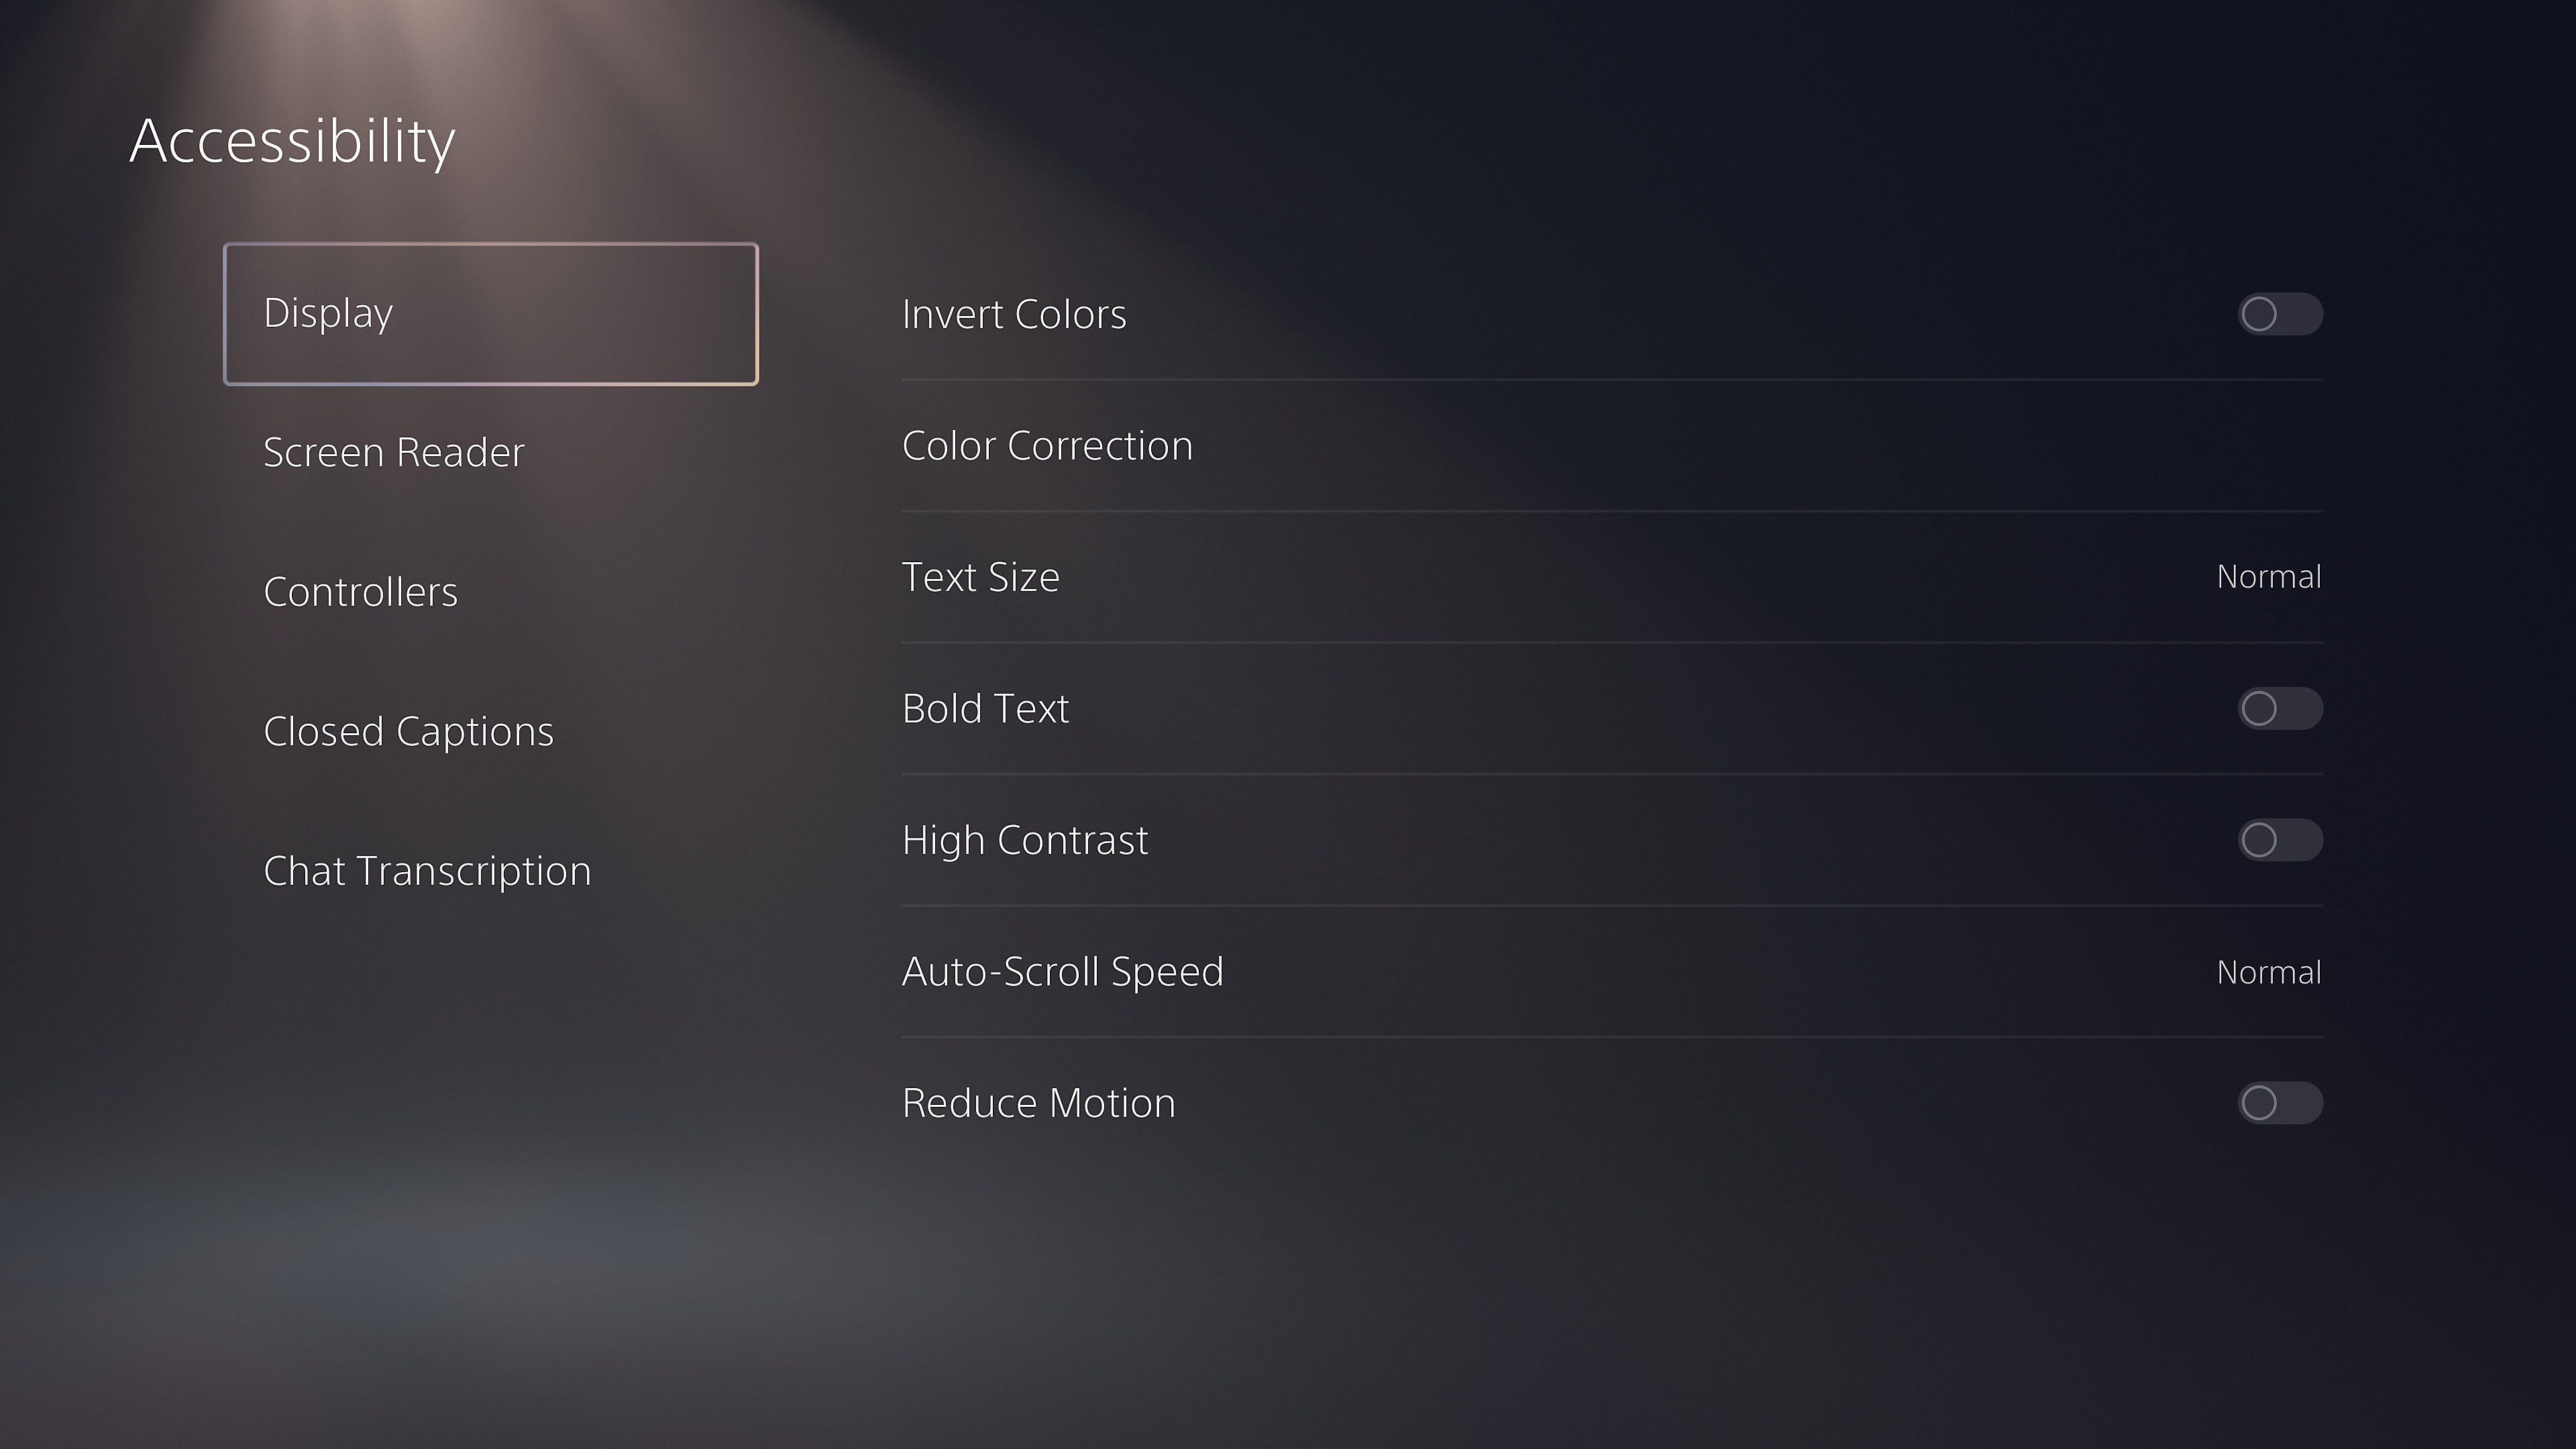 Captura de pantalla de la interfaz de usuario de PS5 para los ajustes de pantalla